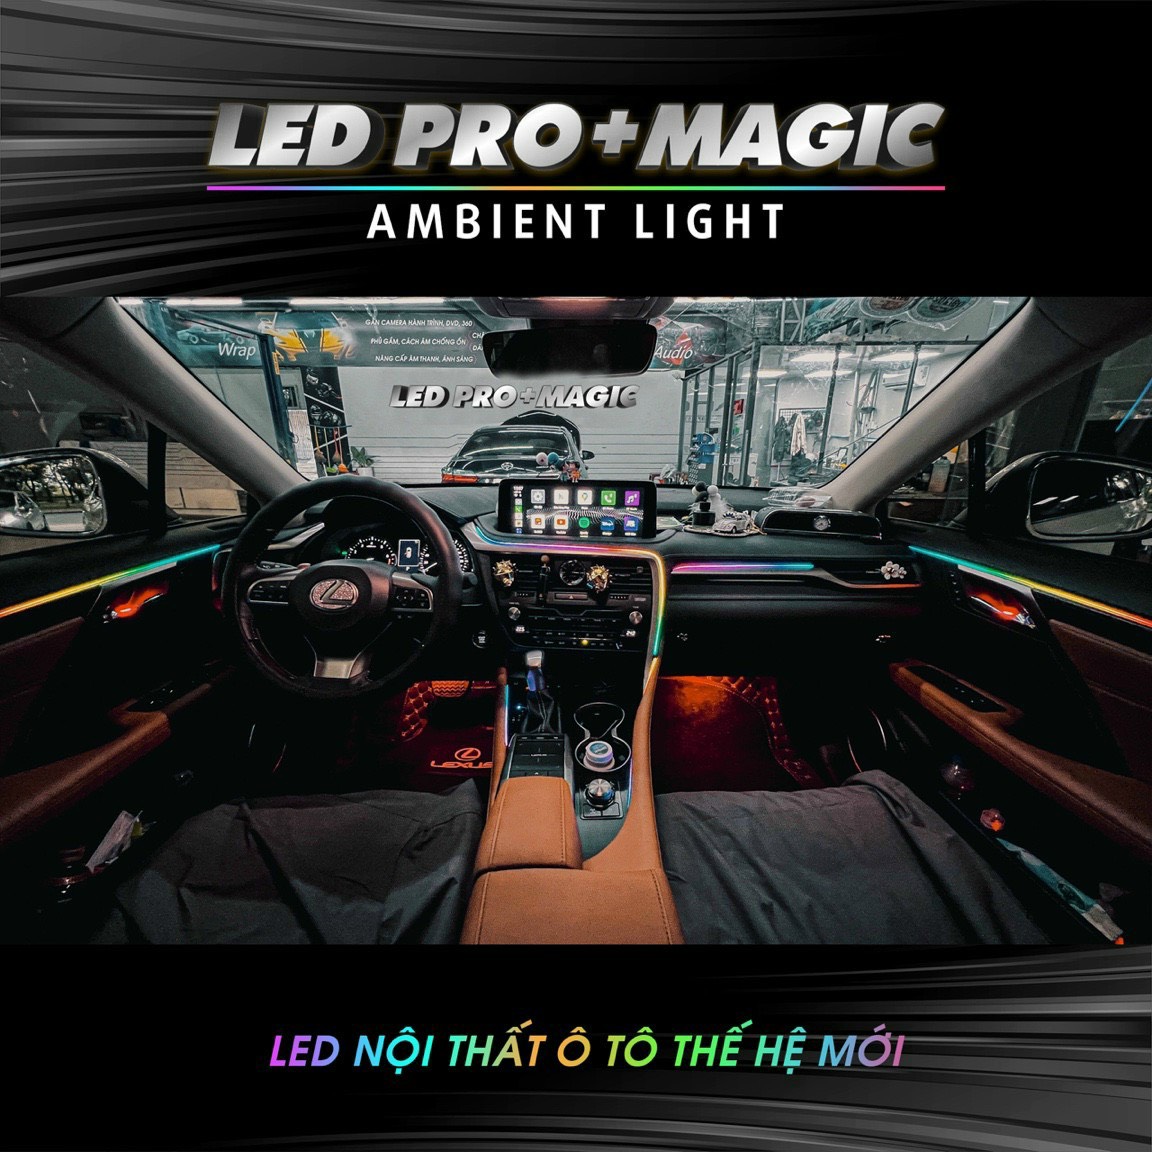 LED PRO + MAGIC